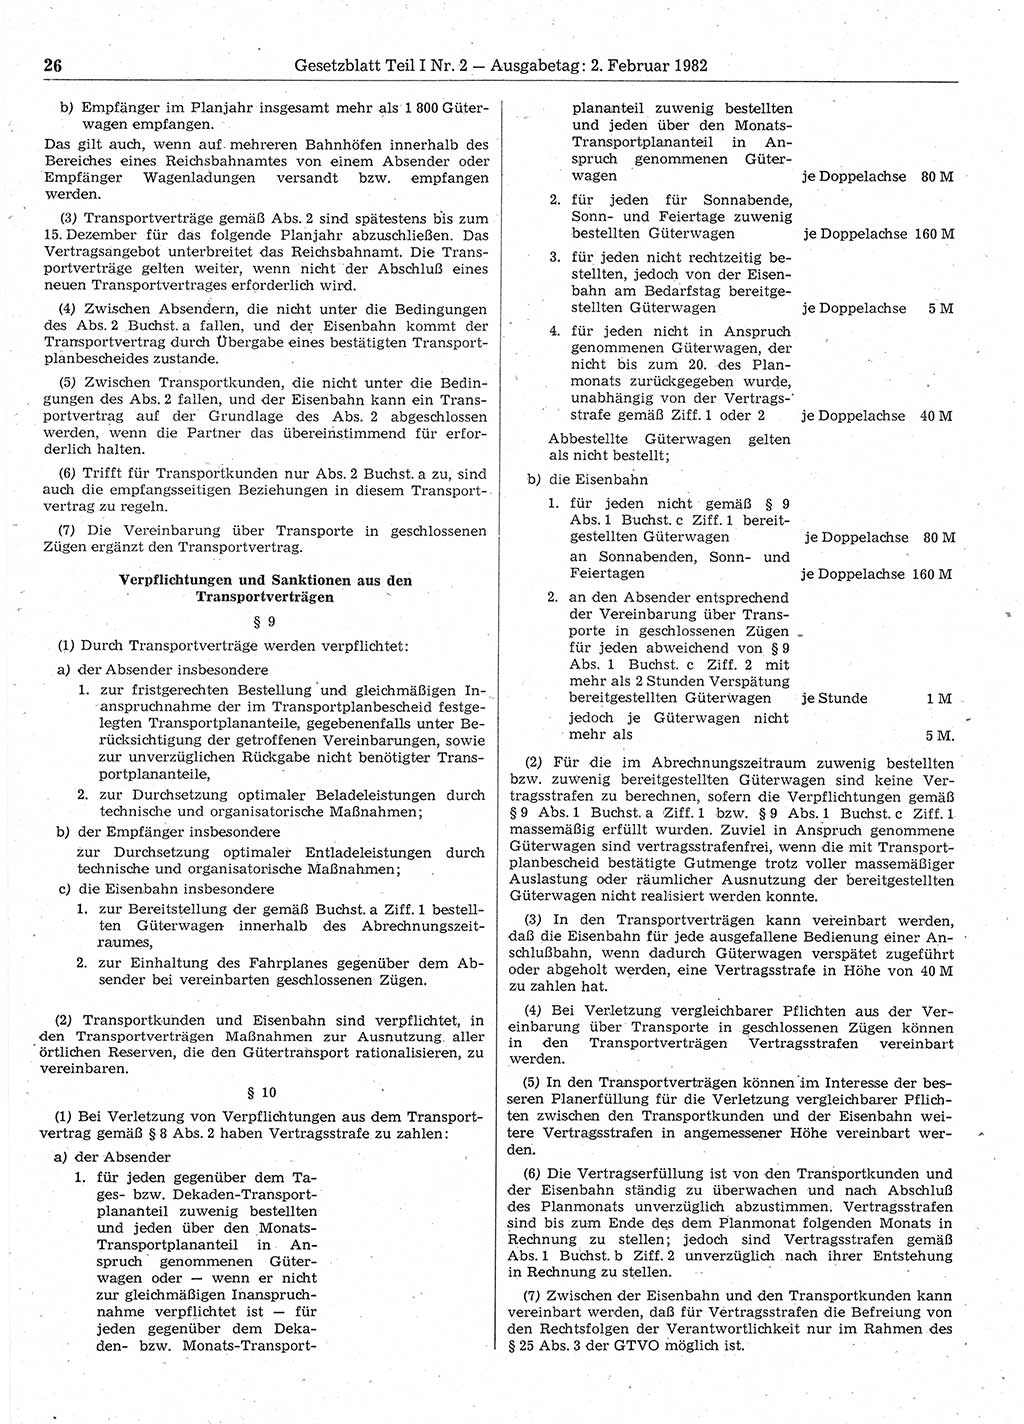 Gesetzblatt (GBl.) der Deutschen Demokratischen Republik (DDR) Teil Ⅰ 1982, Seite 26 (GBl. DDR Ⅰ 1982, S. 26)